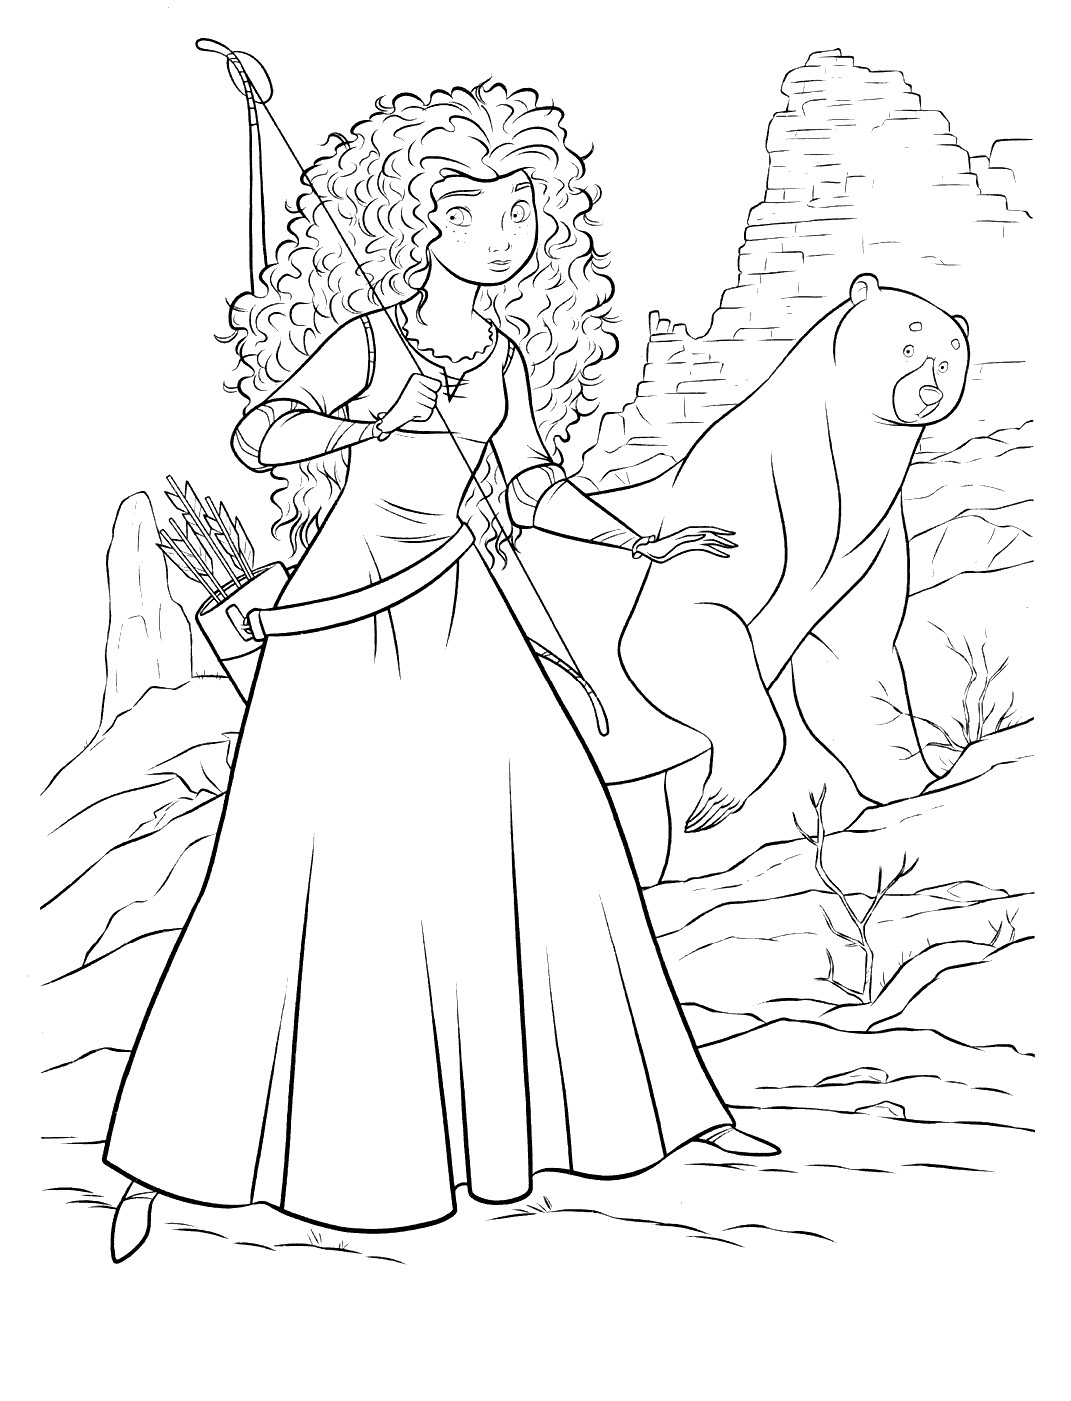 Merida et sa maman transformée en ours par le sort de la sorcière !